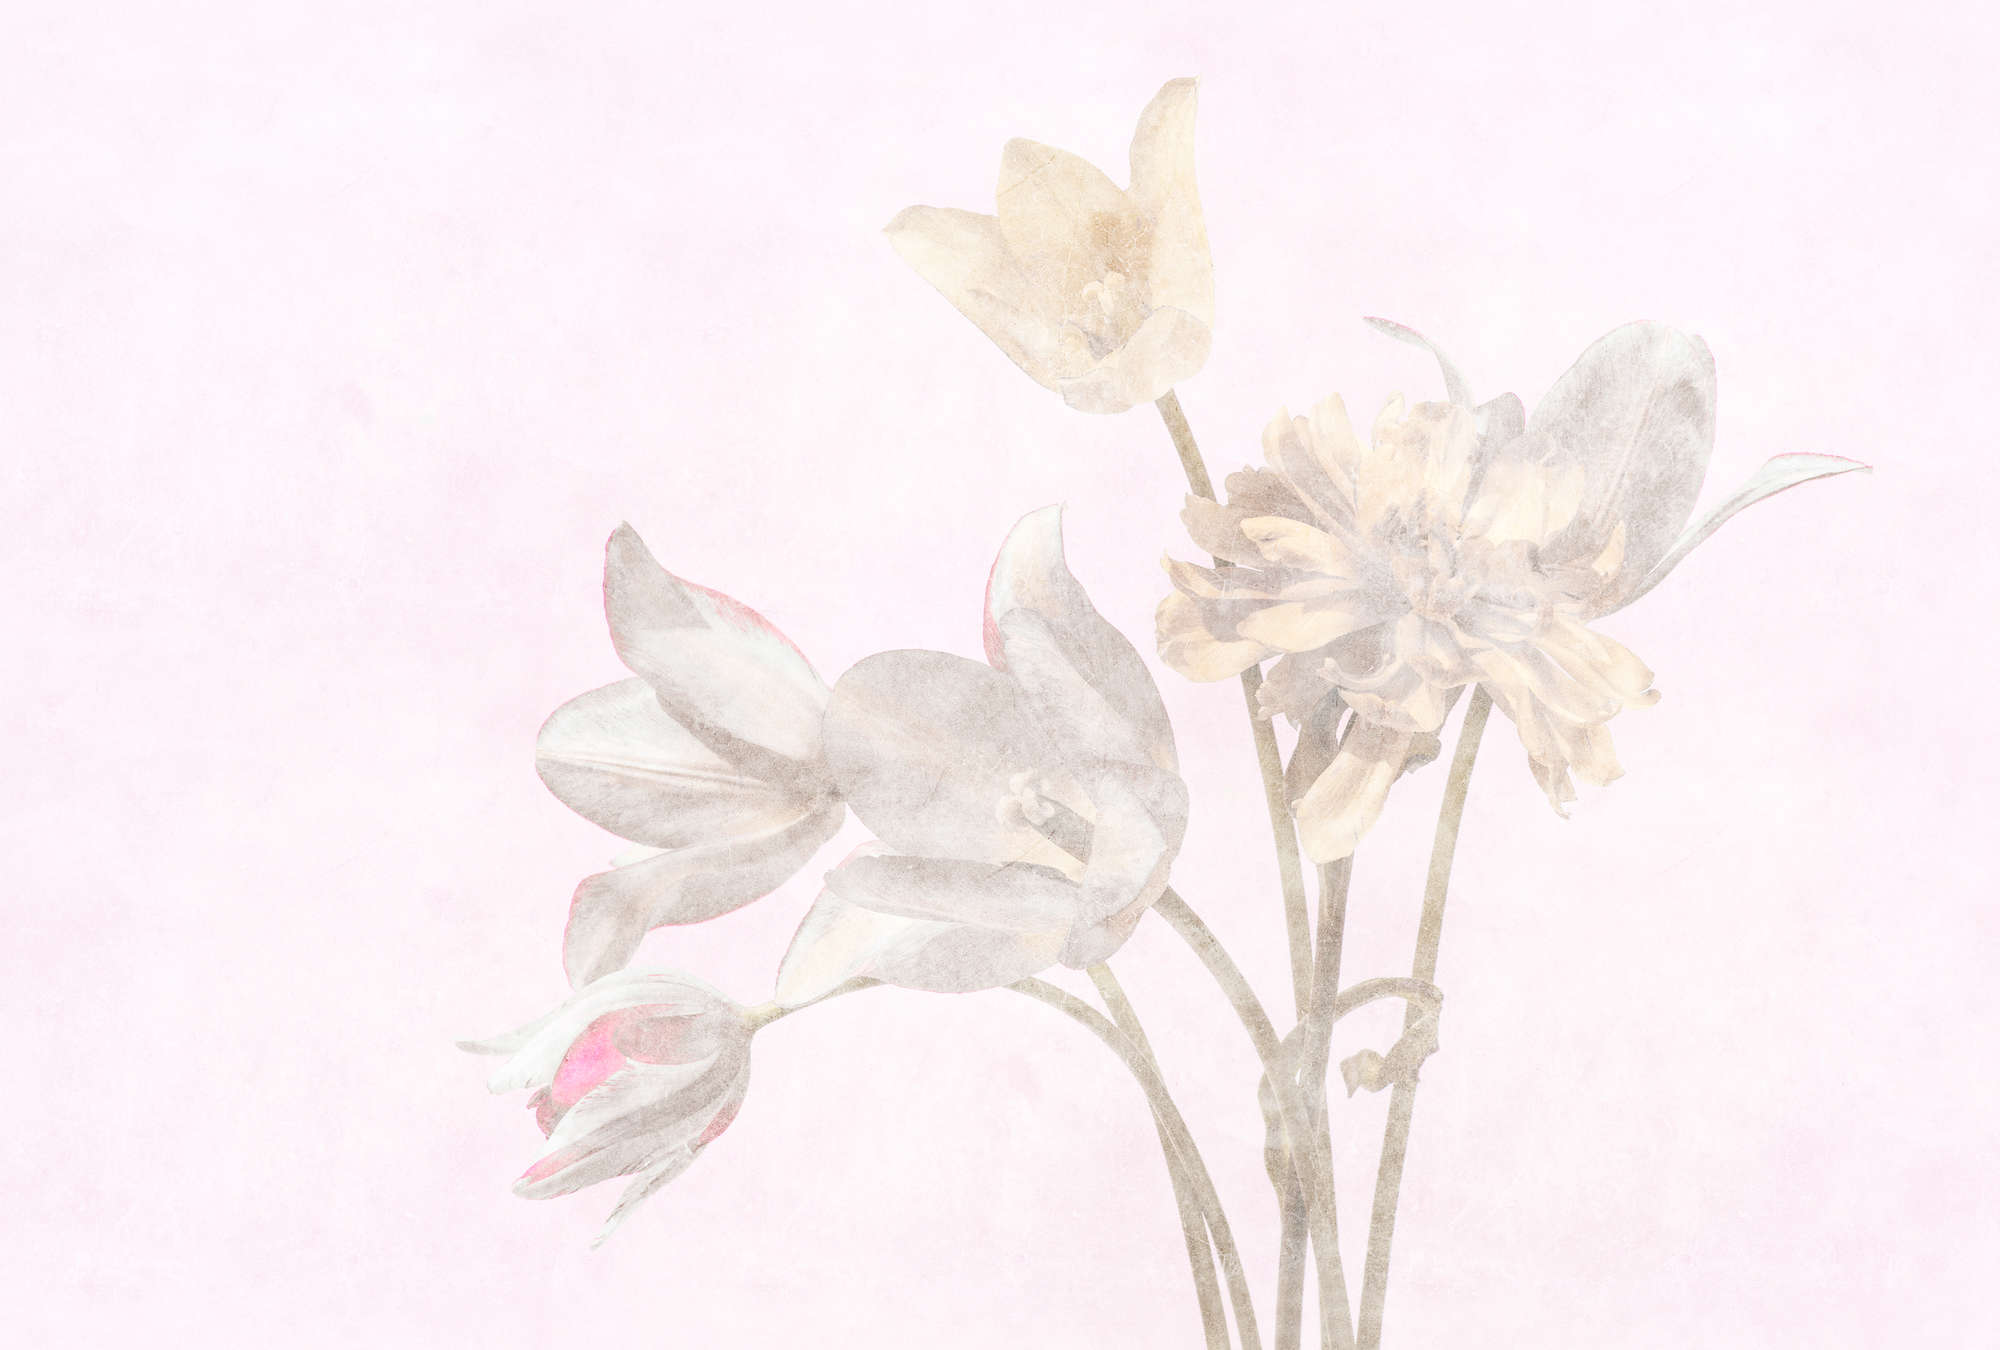             Habitación matutina 1 - Papel pintado de fotos de flores florecidas en estilo descolorido
        